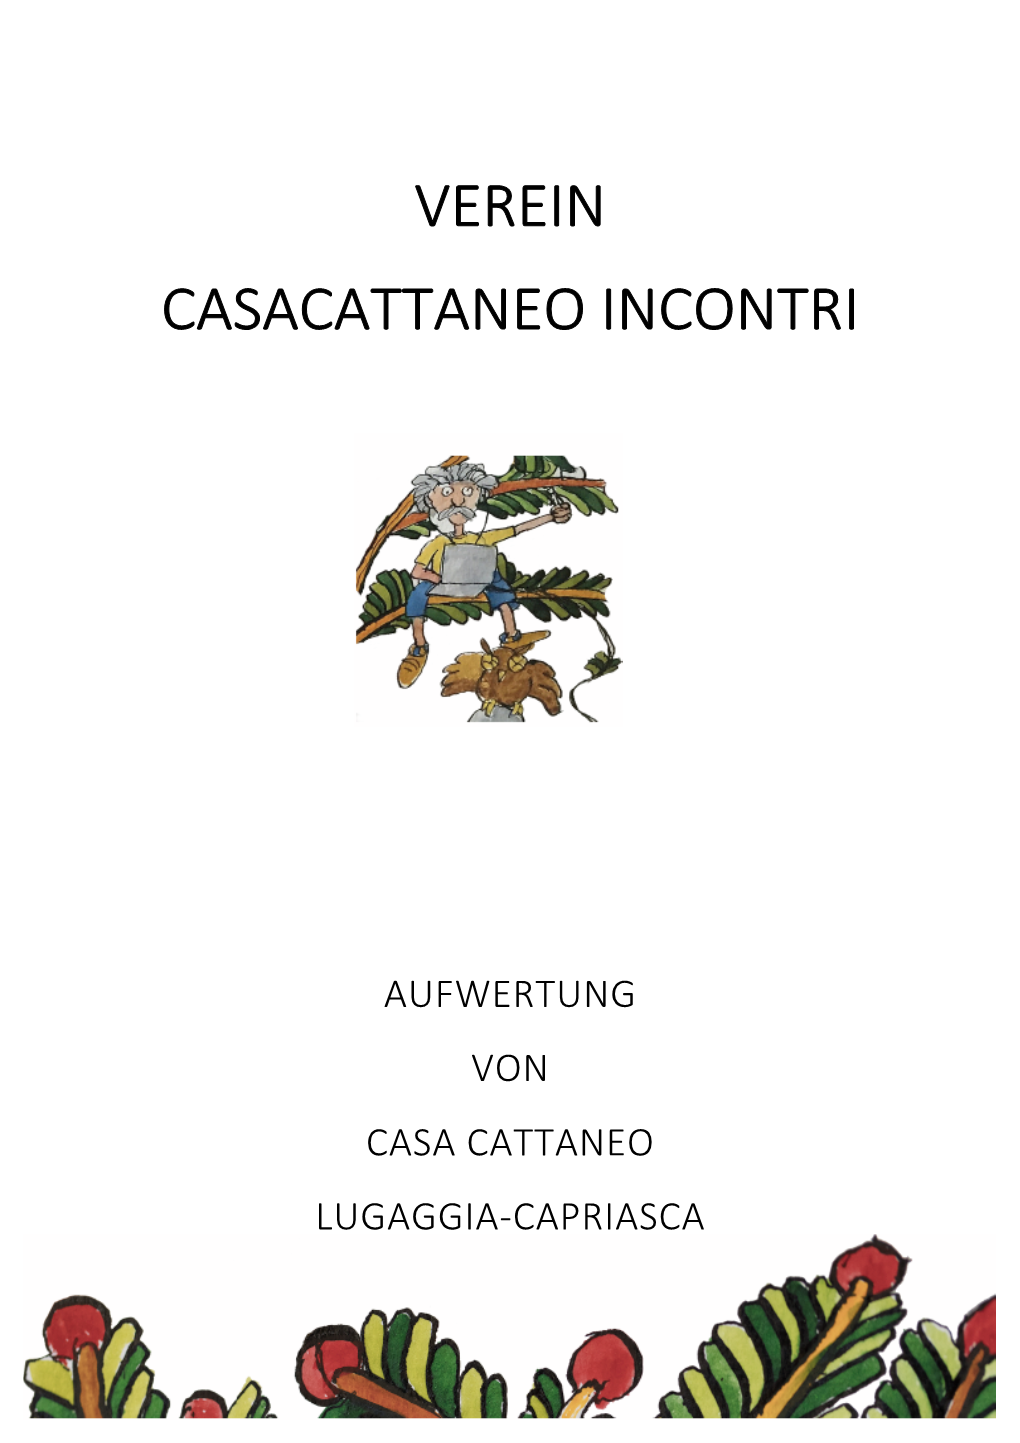 Verein Casacattaneo Incontri